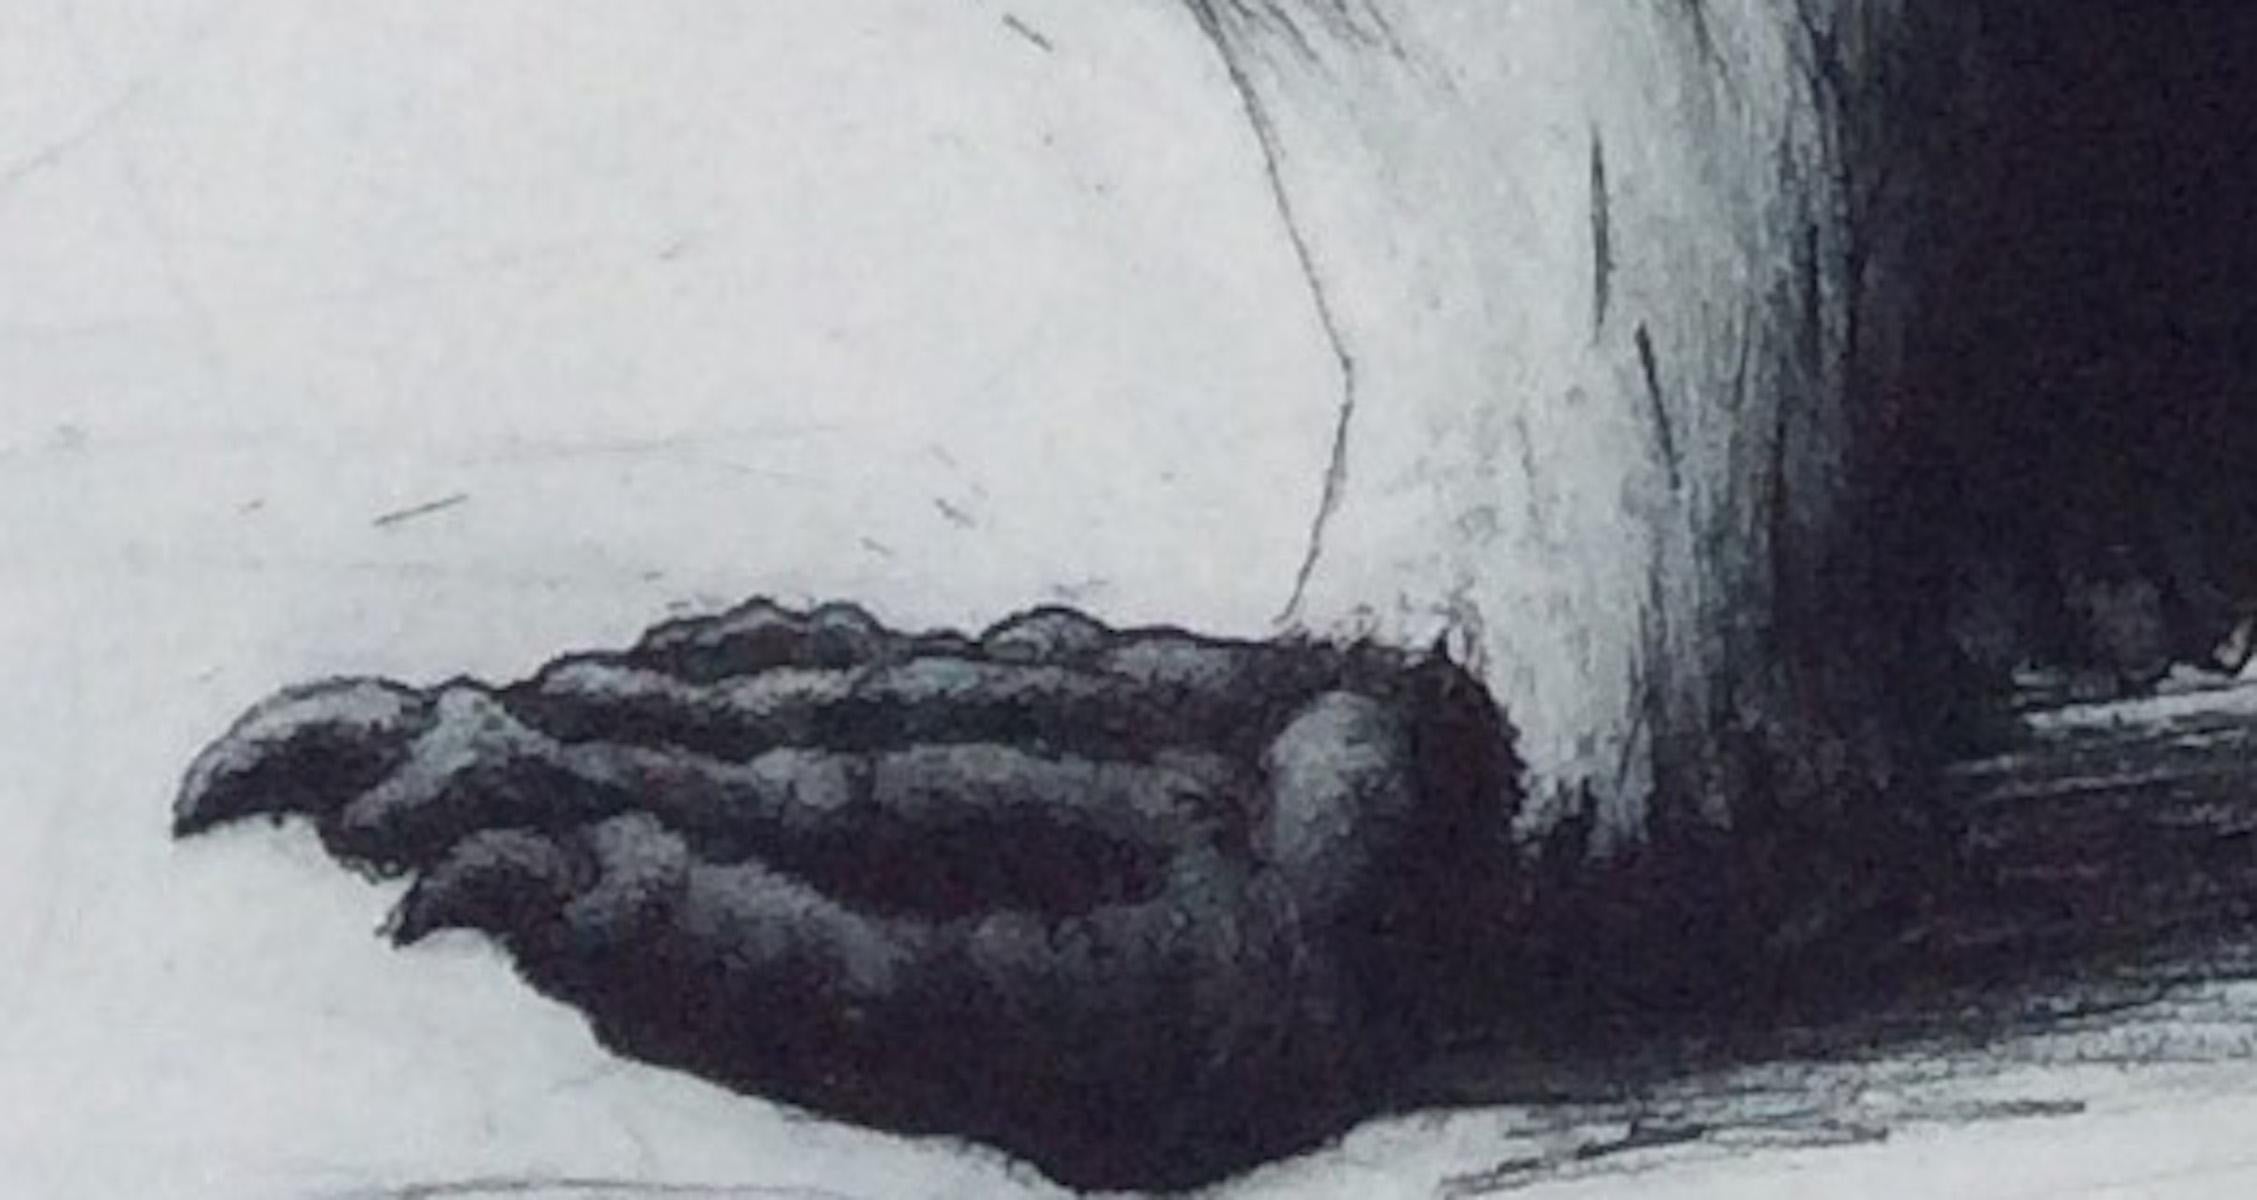 Originaldruck, von der Künstlerin handgefertigt und handgedruckt. Ein Pinguin auf einer Mission, ein Eselspinguin, der auf die unbeugsame Art eines Pinguins vorwärts schreitet.
Helen Fay ist online und in unserer Galerie bei Wychwood Art erhältlich.